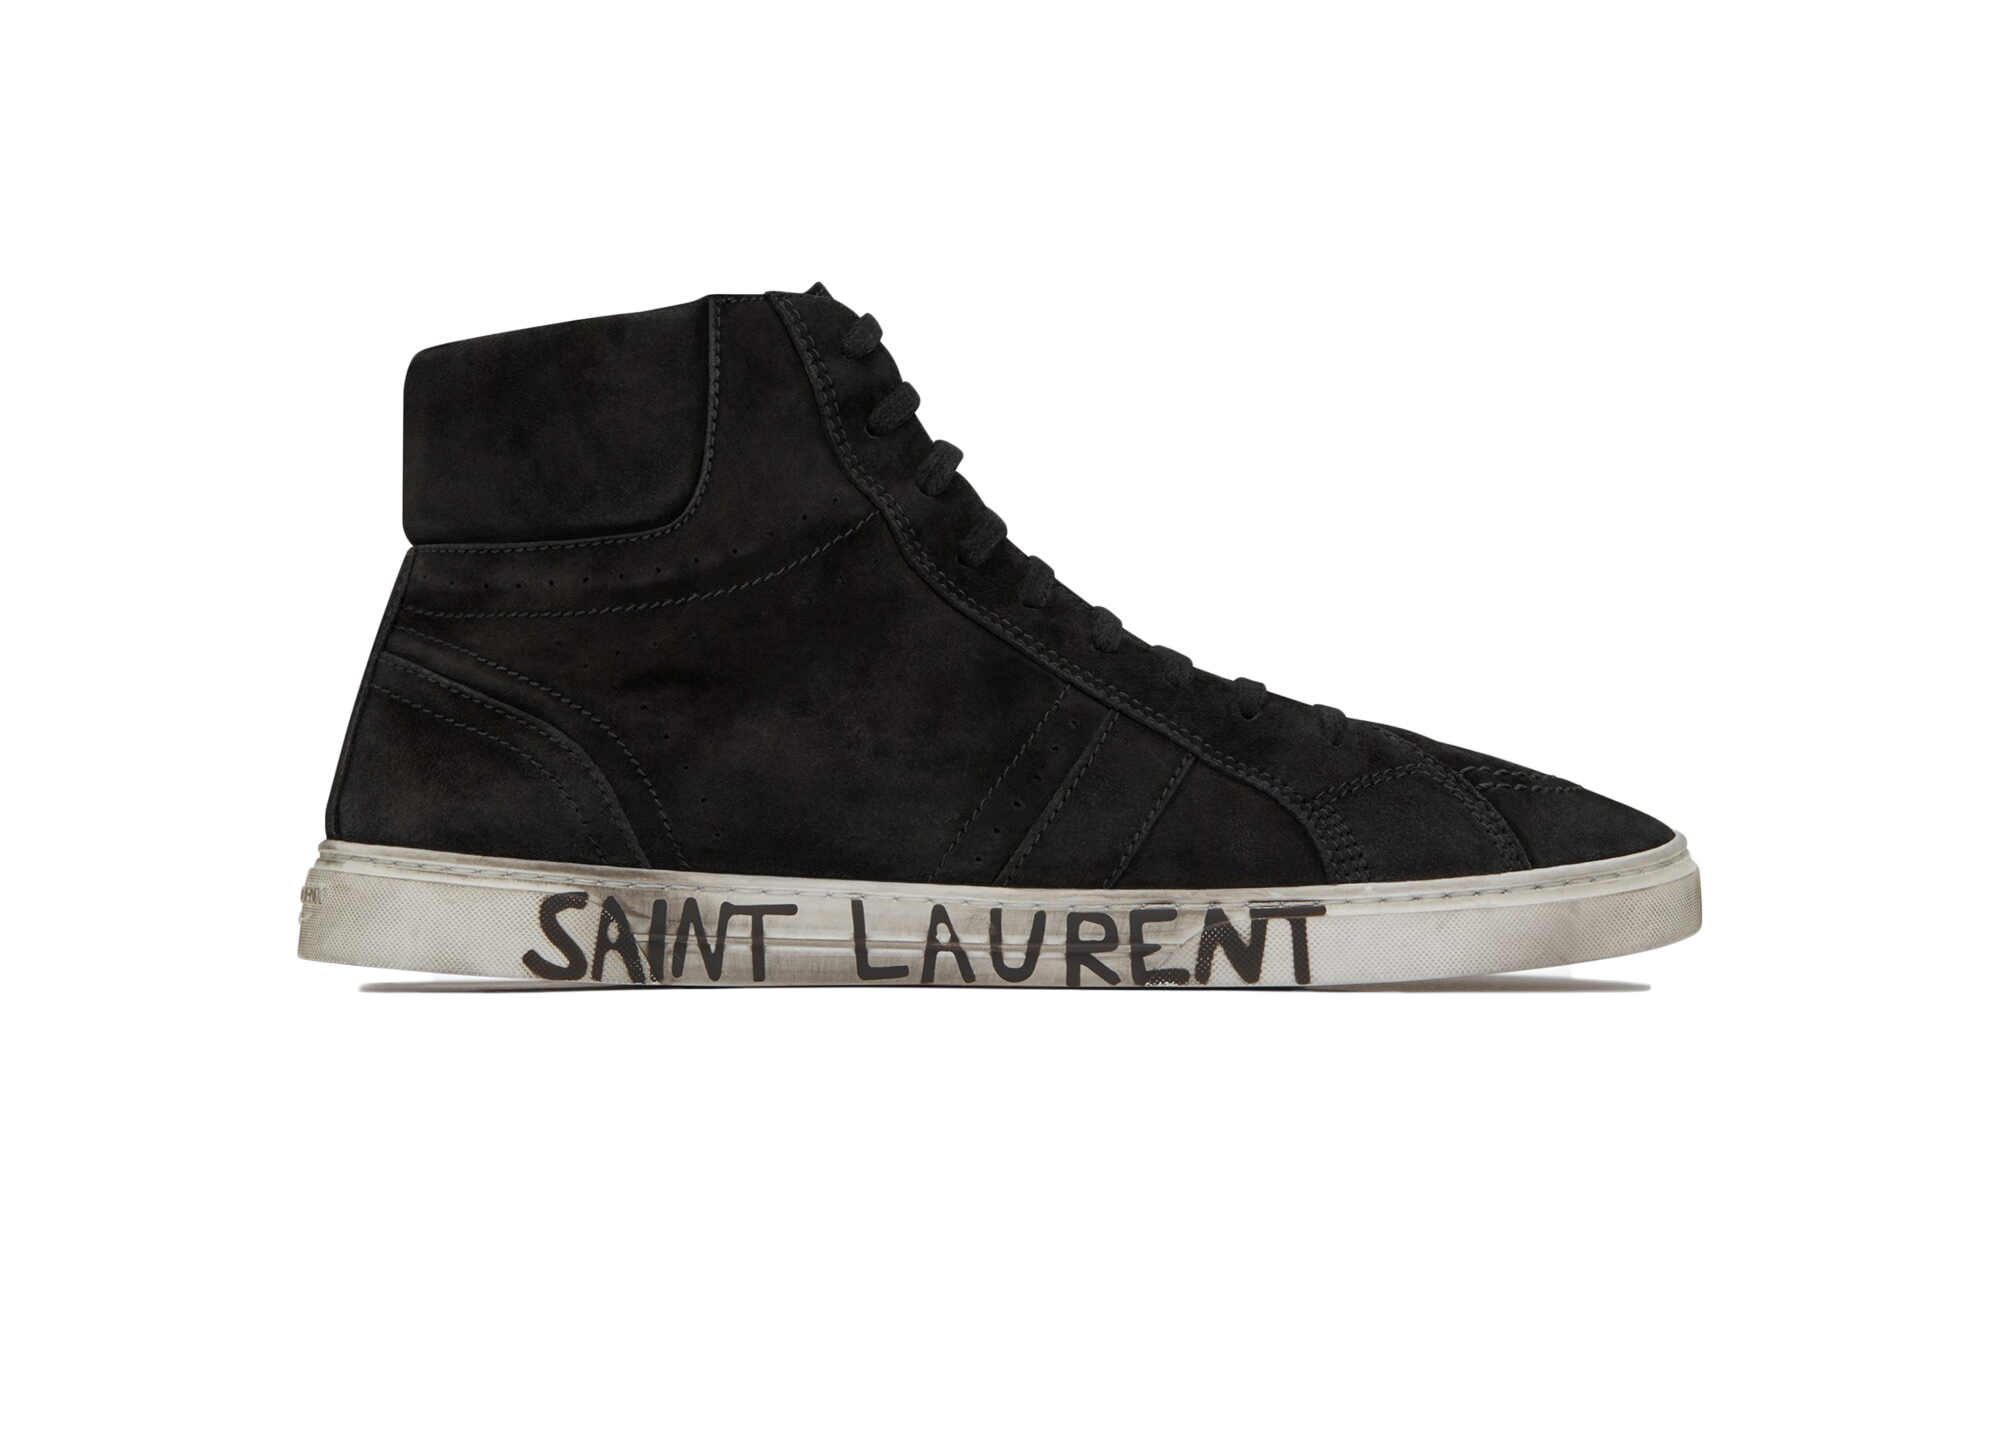 Buy Saint Laurent Shoes & Deadstock Sneakers